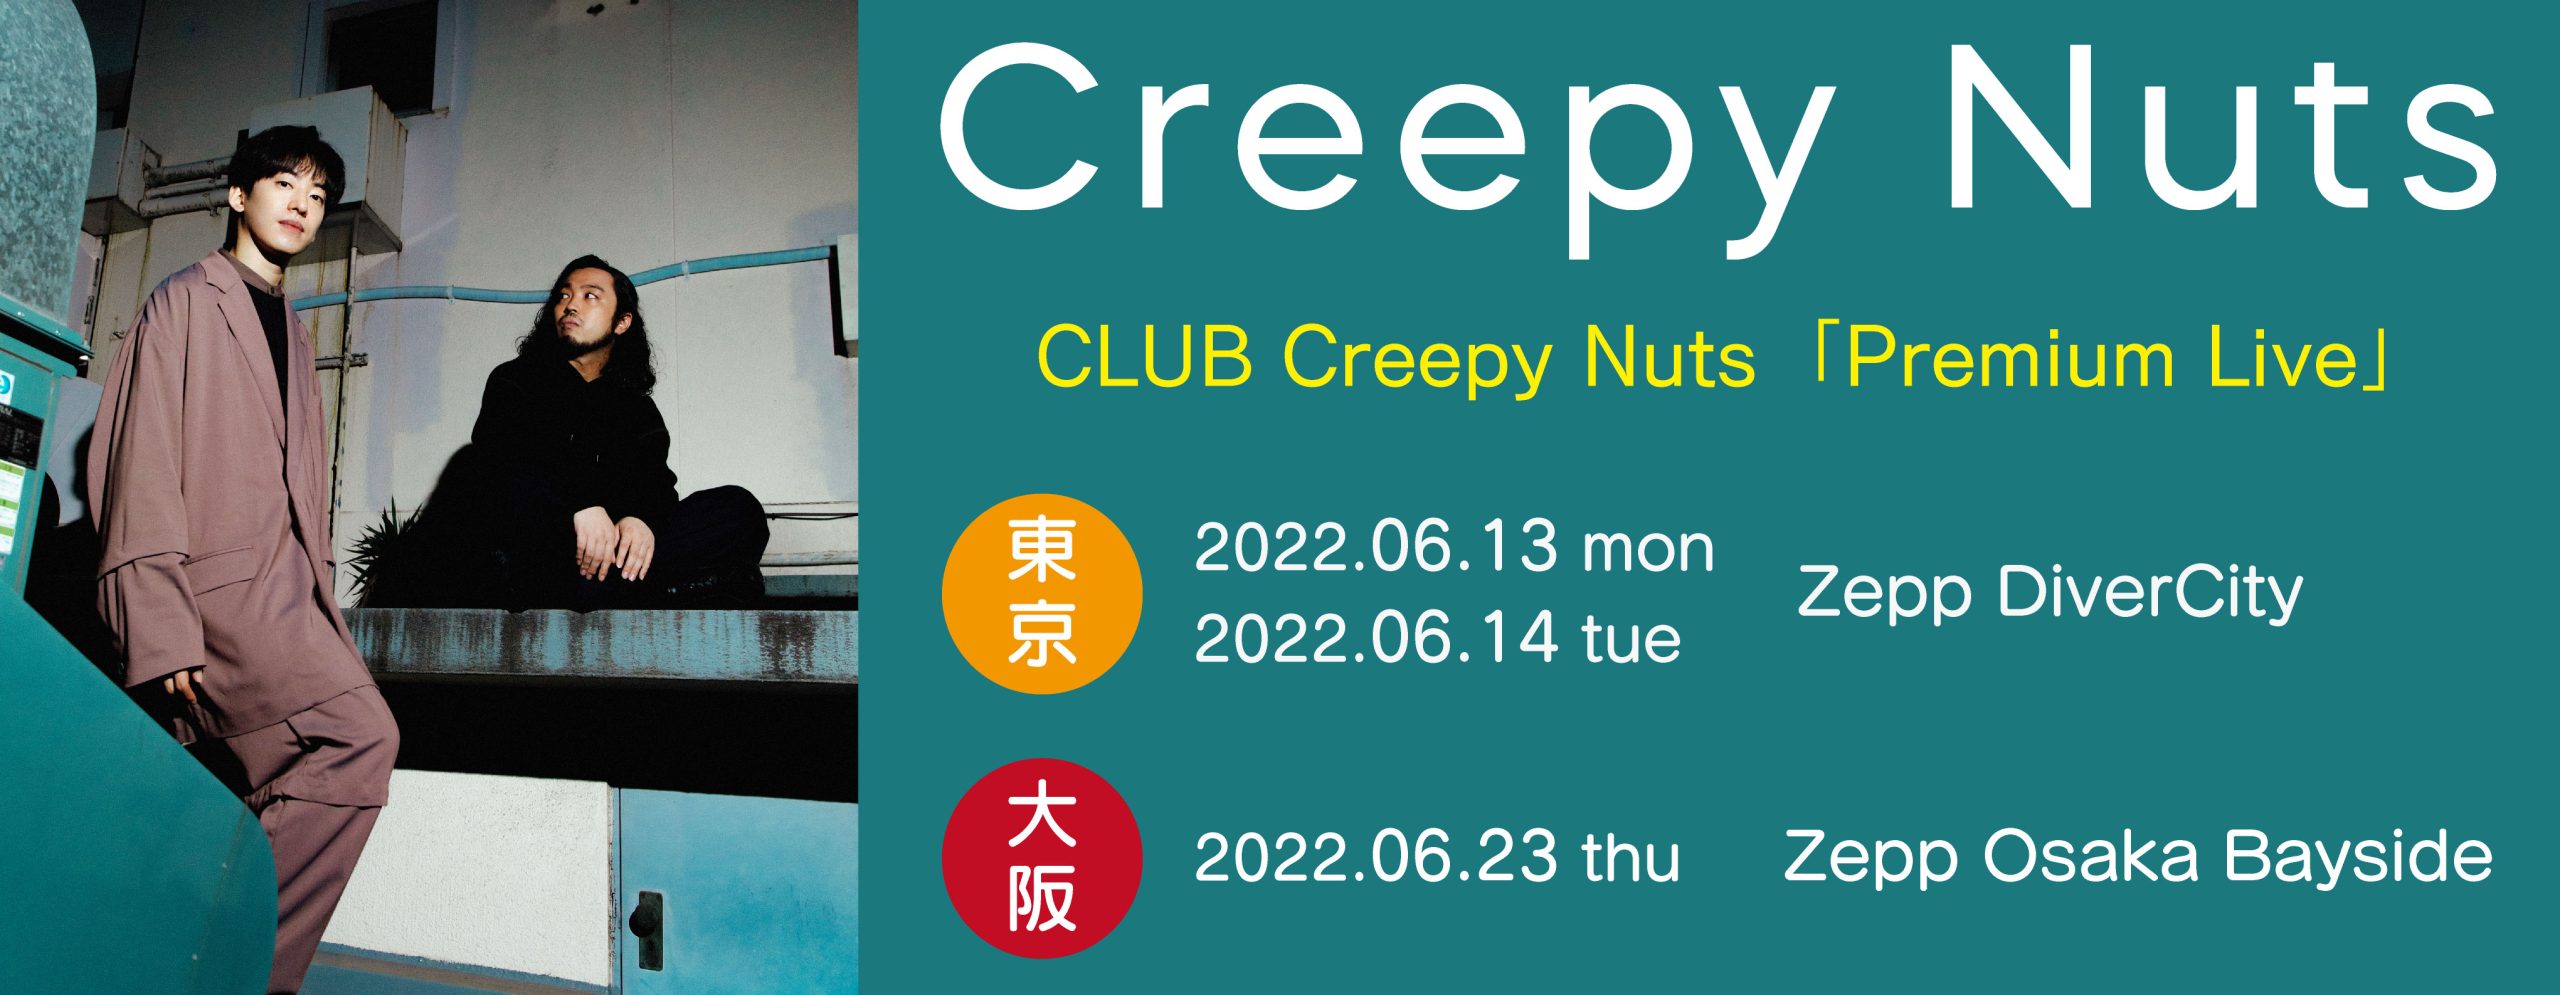 CLUB Creepy Nuts「Premium Live」